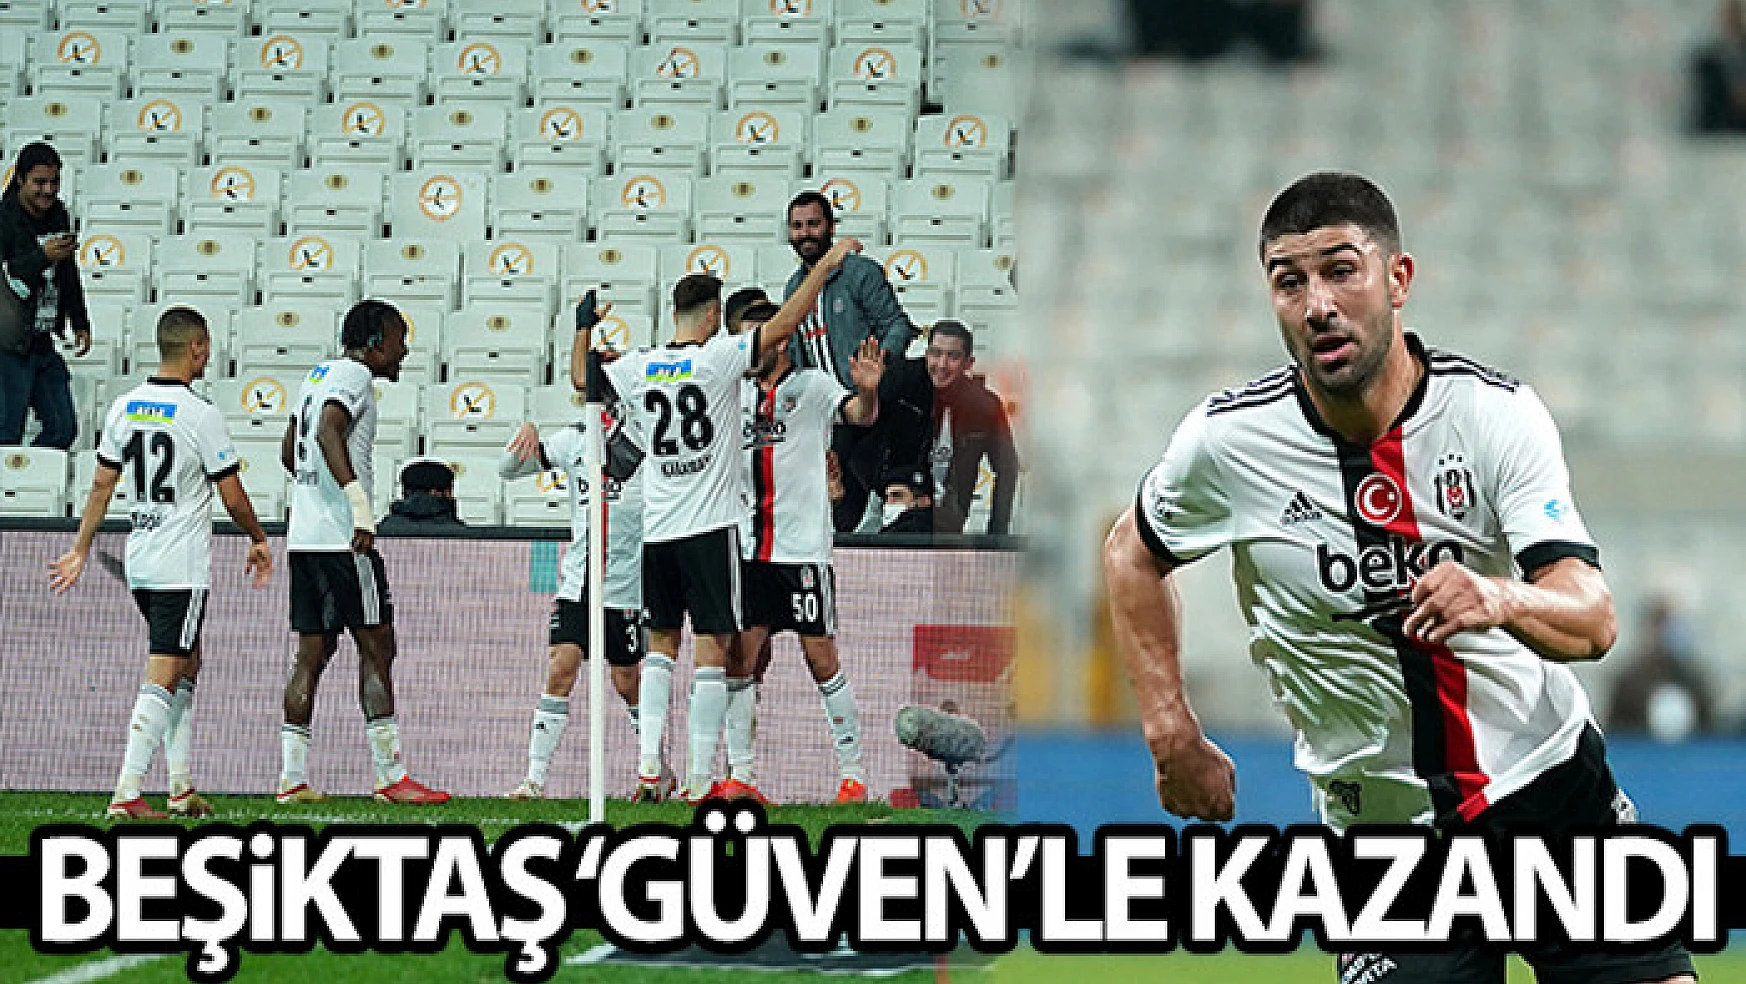 Beşiktaş 'Güven'le kazandı